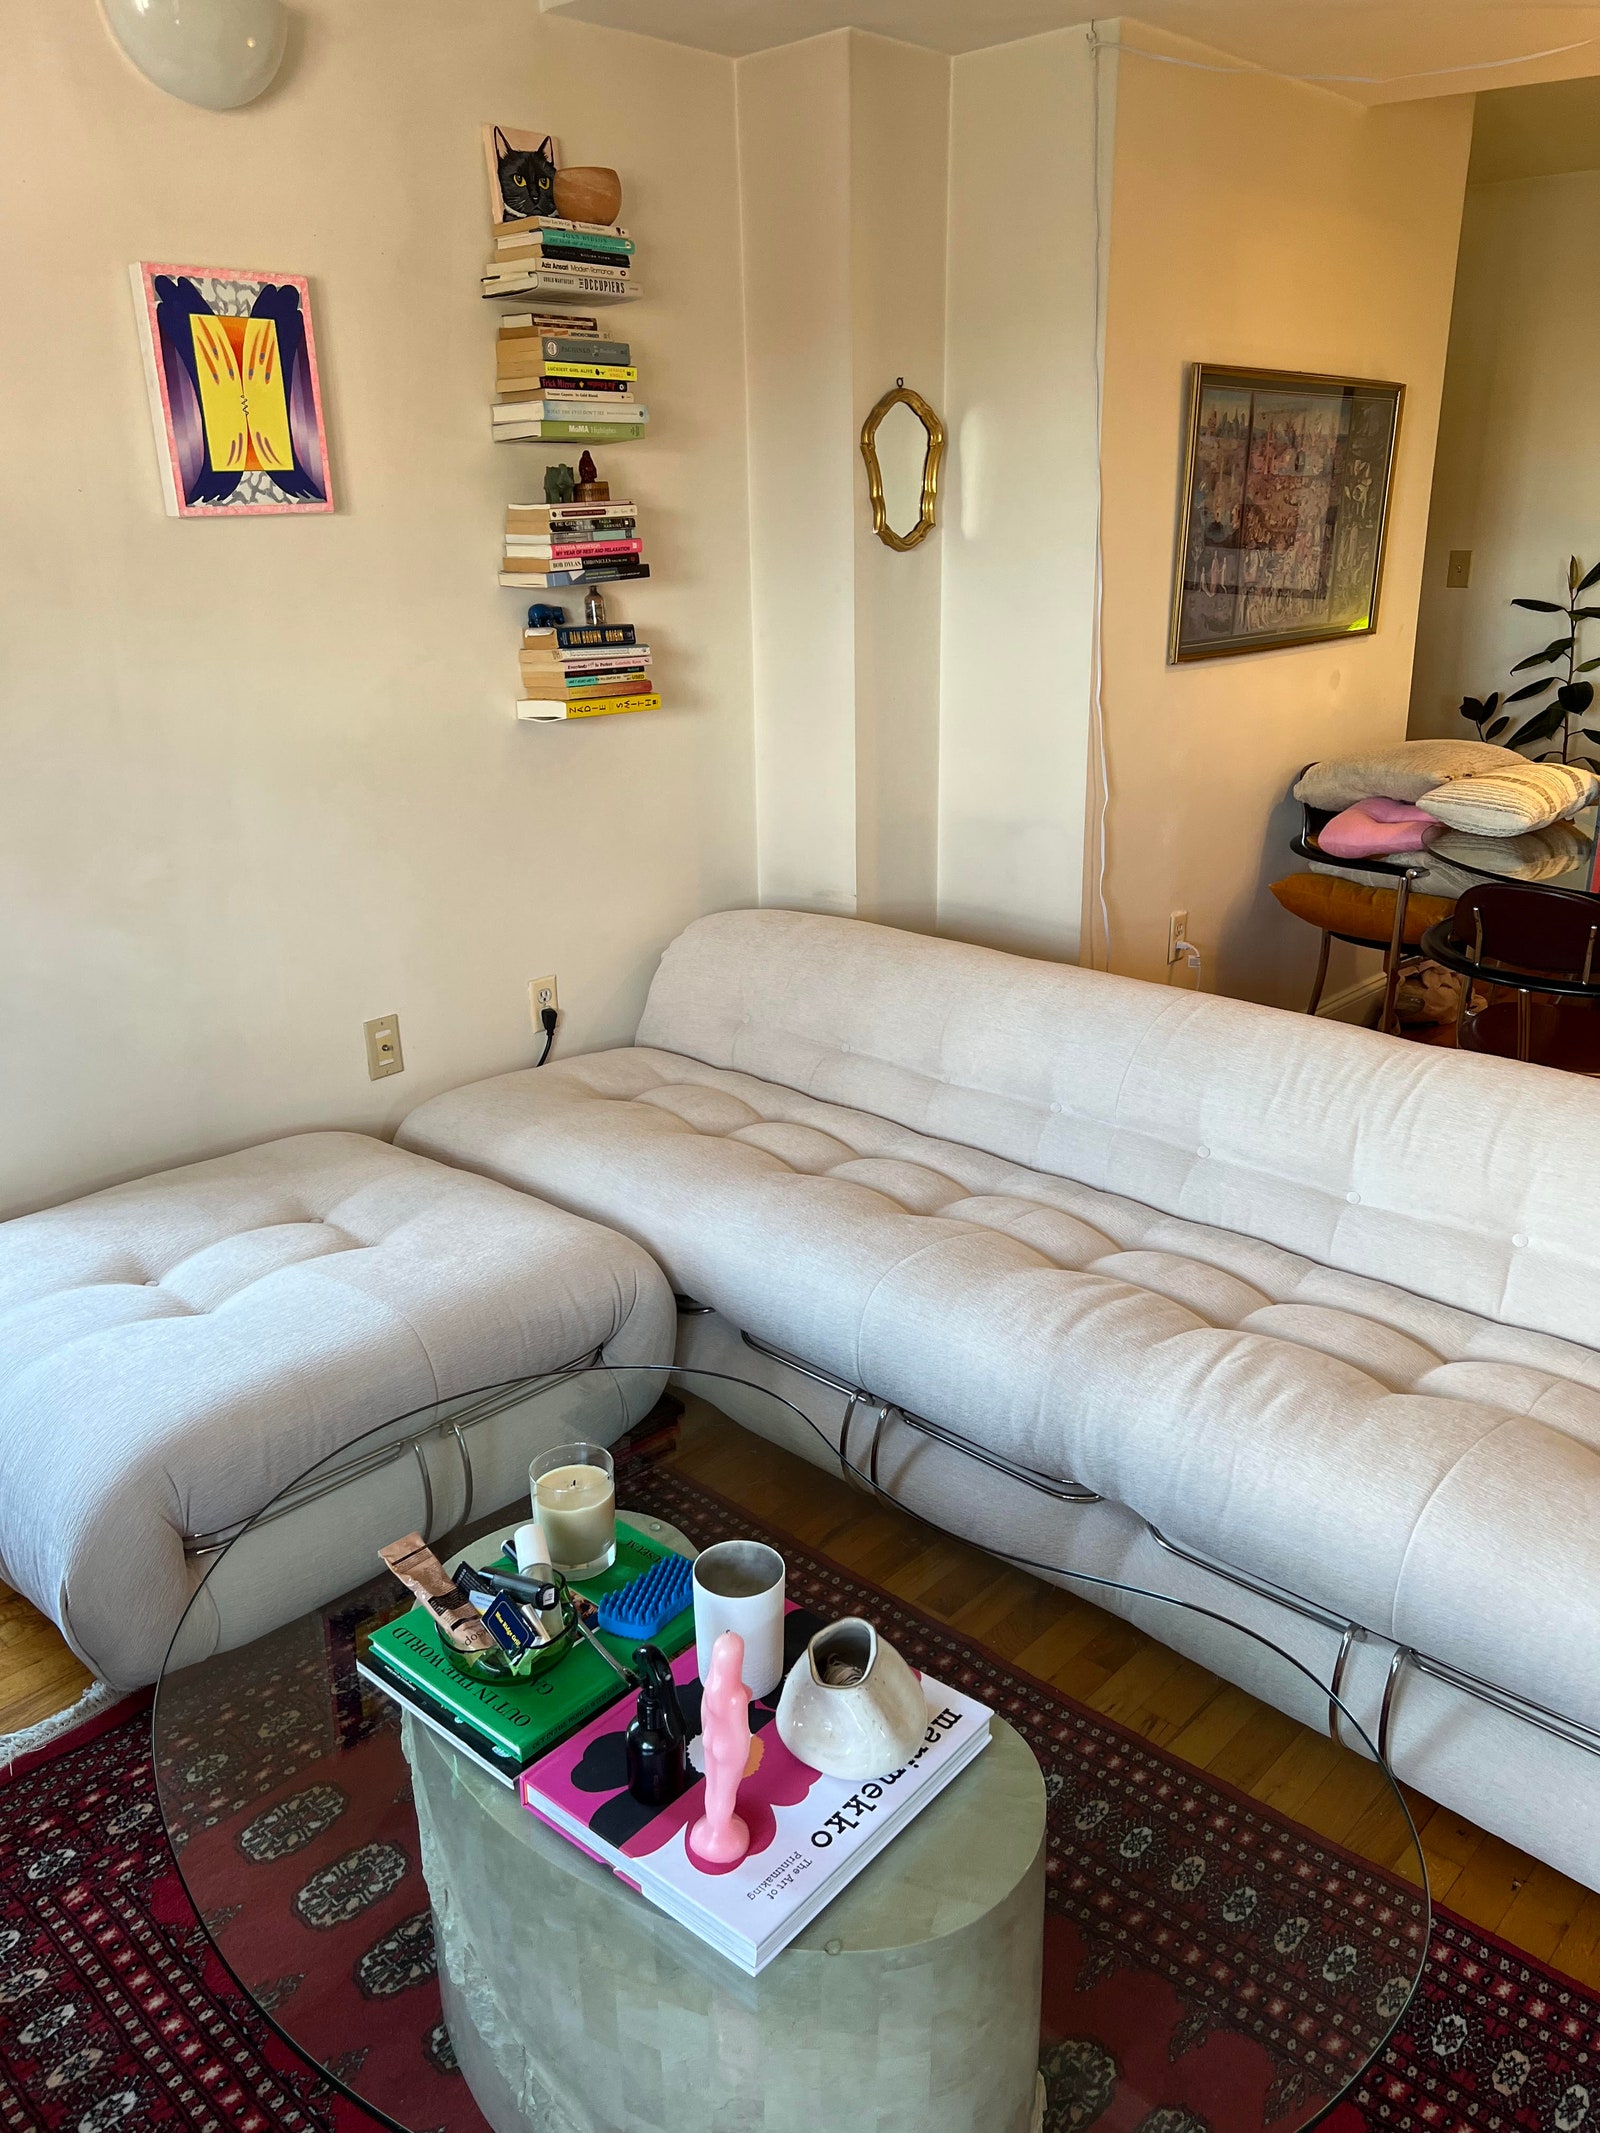 Le canapé de MiAnne a été reconstitué en toute sécurité dans son appartement après l'opération.